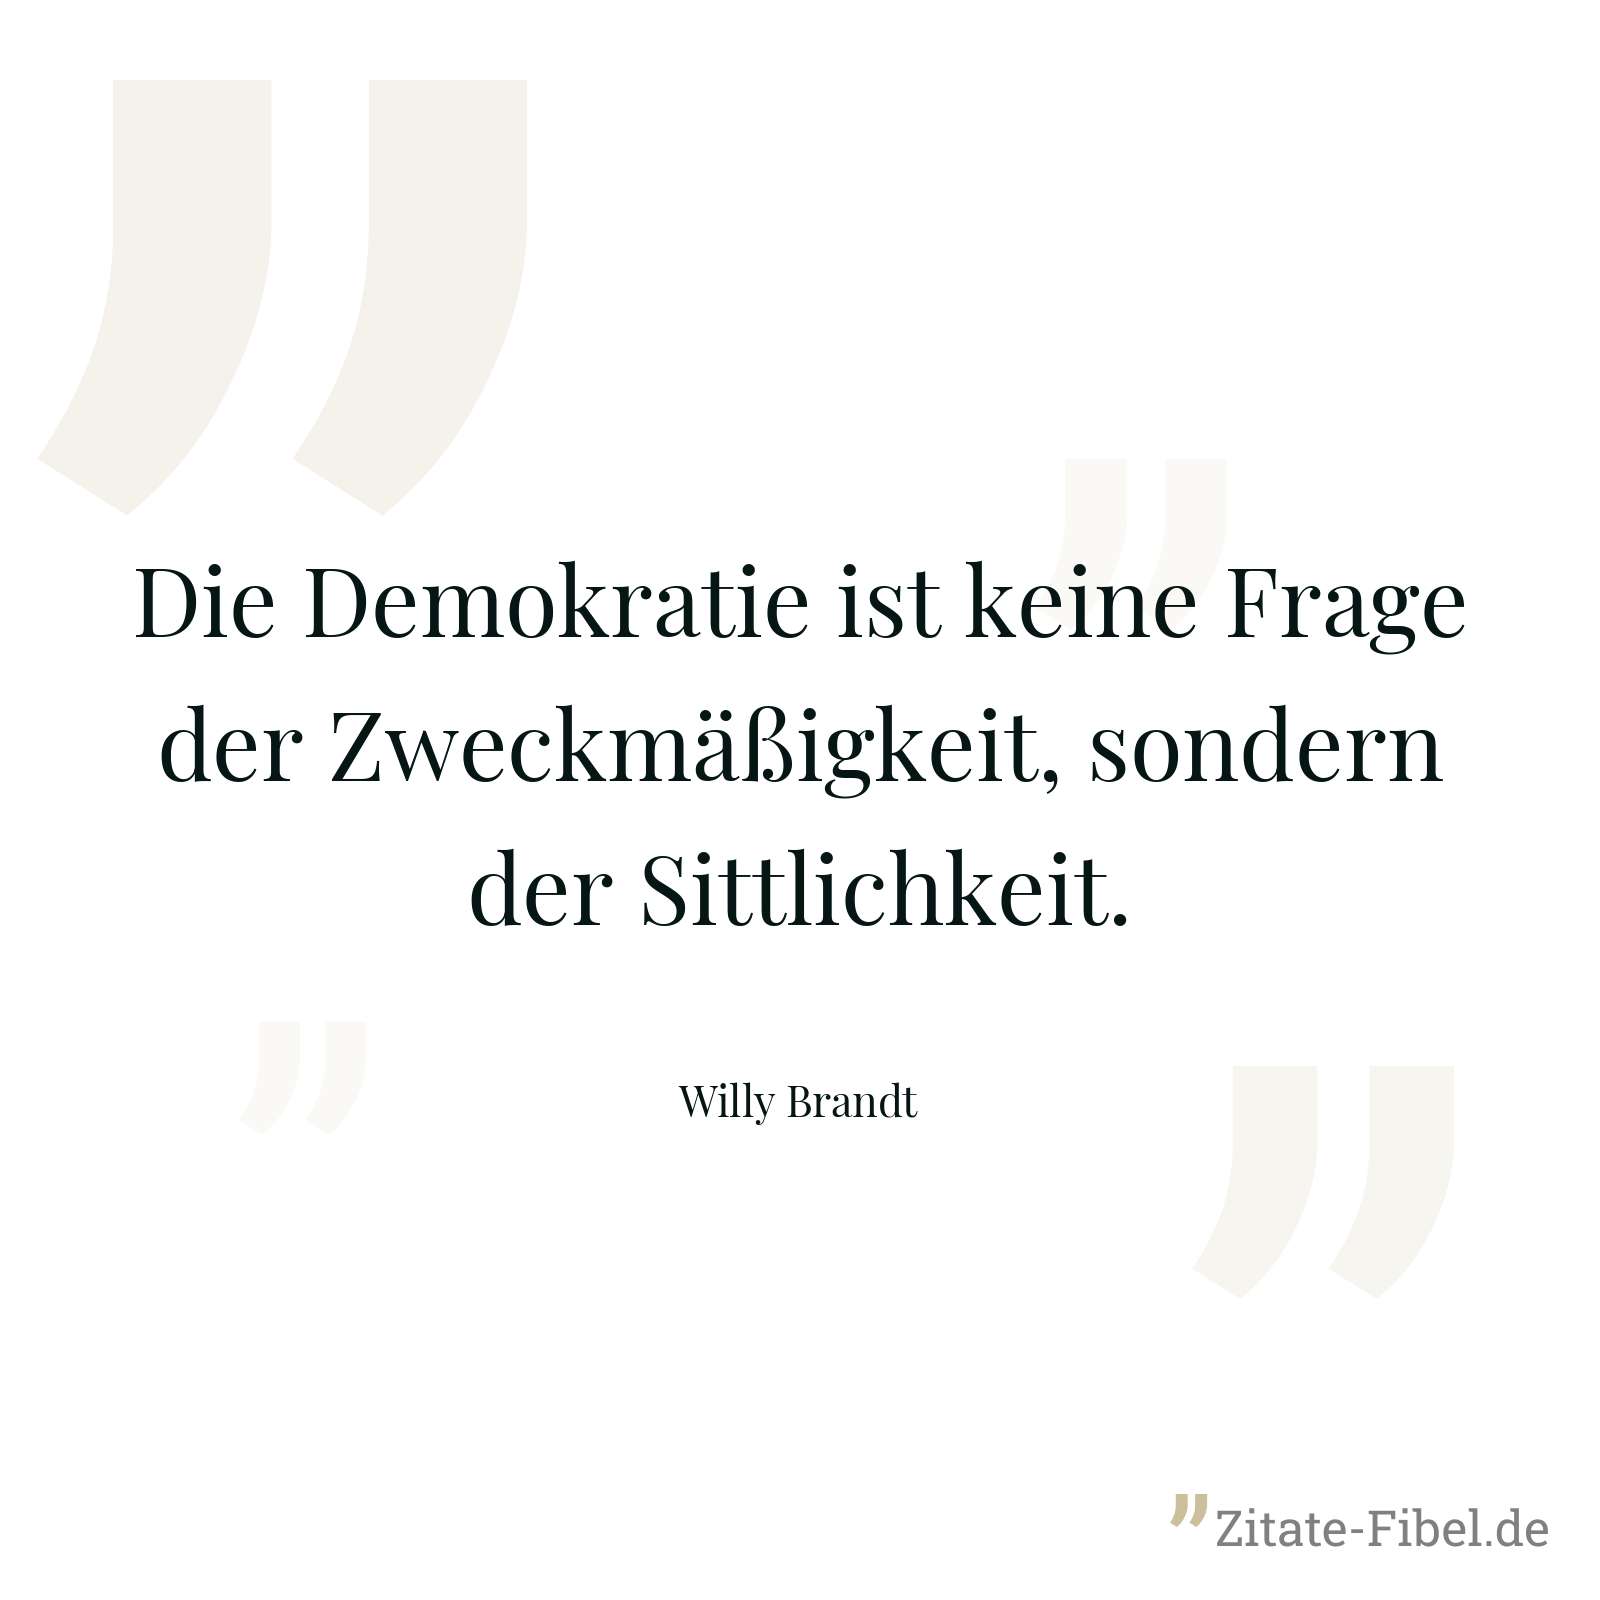 Die Demokratie ist keine Frage der Zweckmäßigkeit, sondern der Sittlichkeit. - Willy Brandt